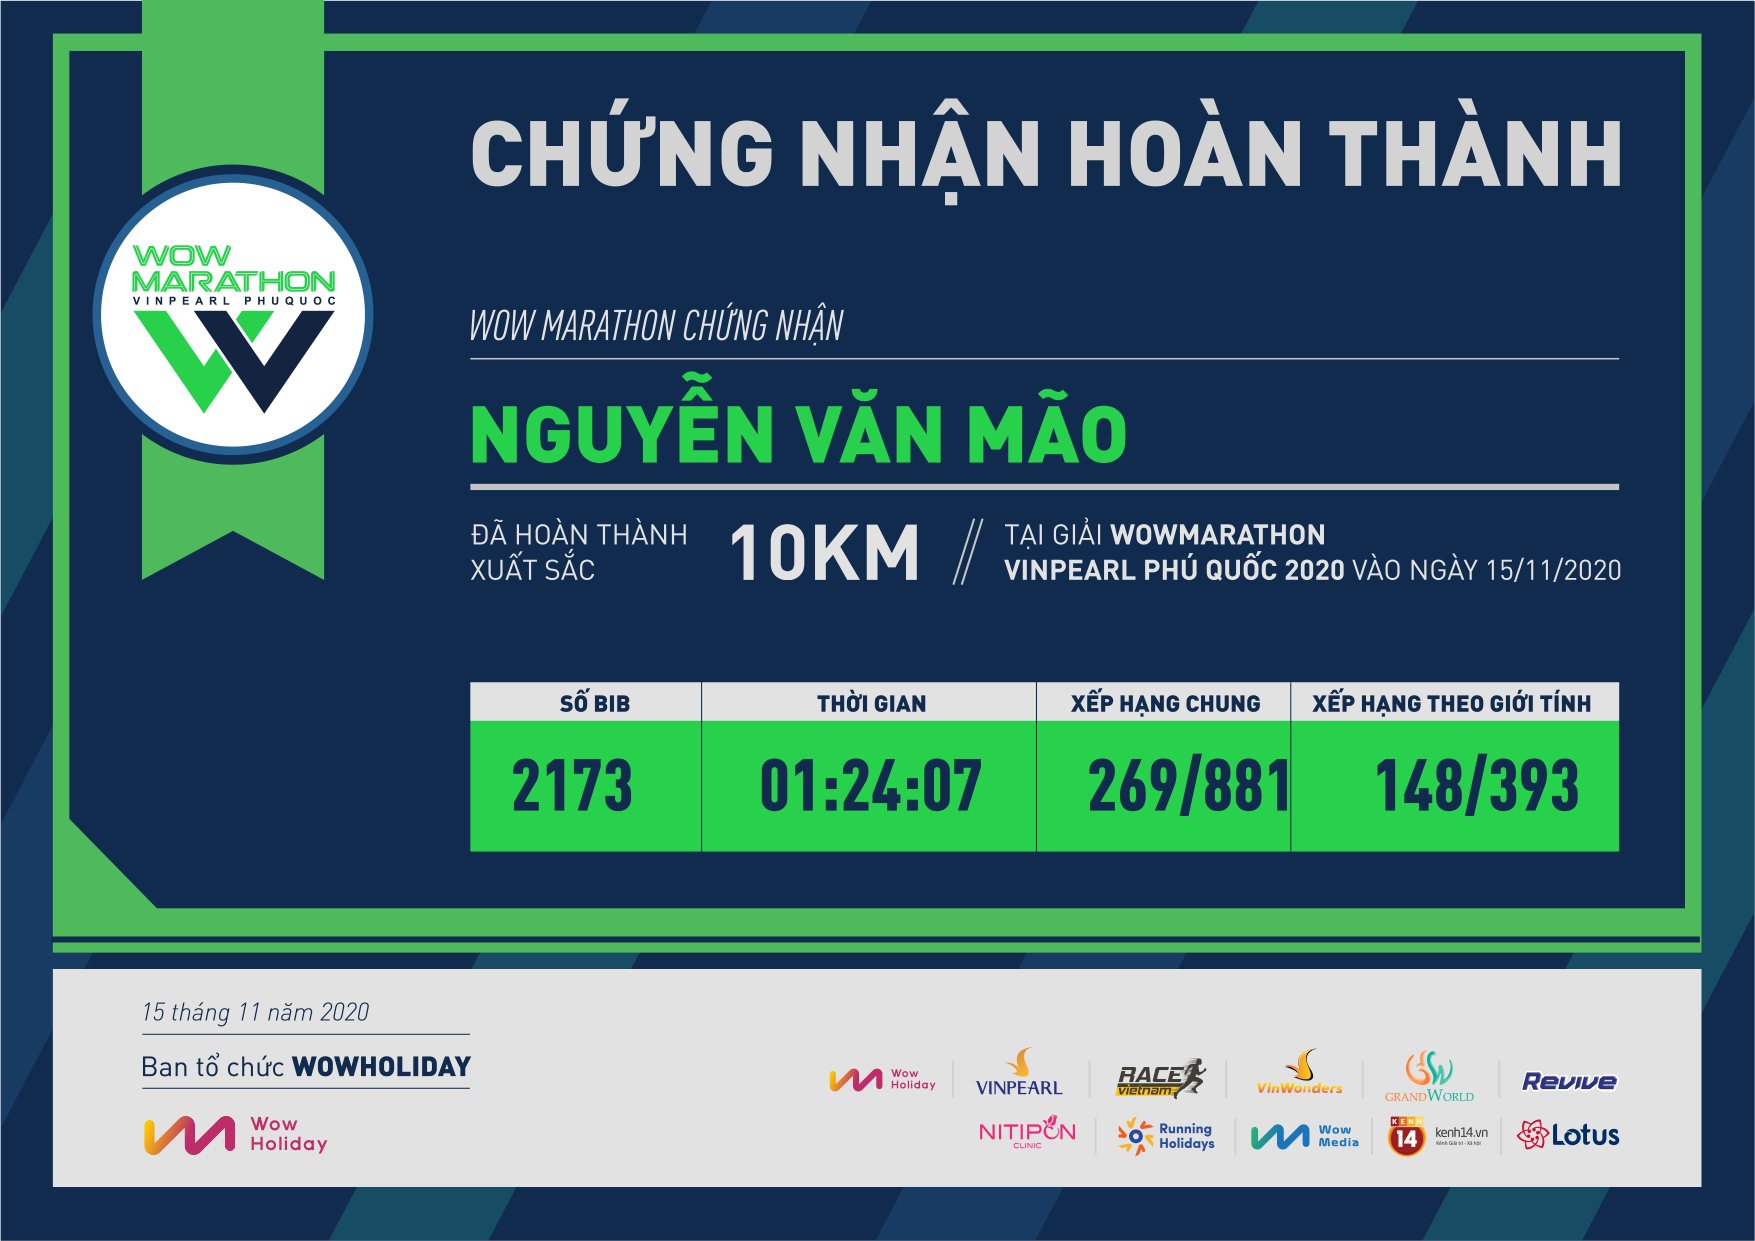 2173 - Nguyễn Văn Mão